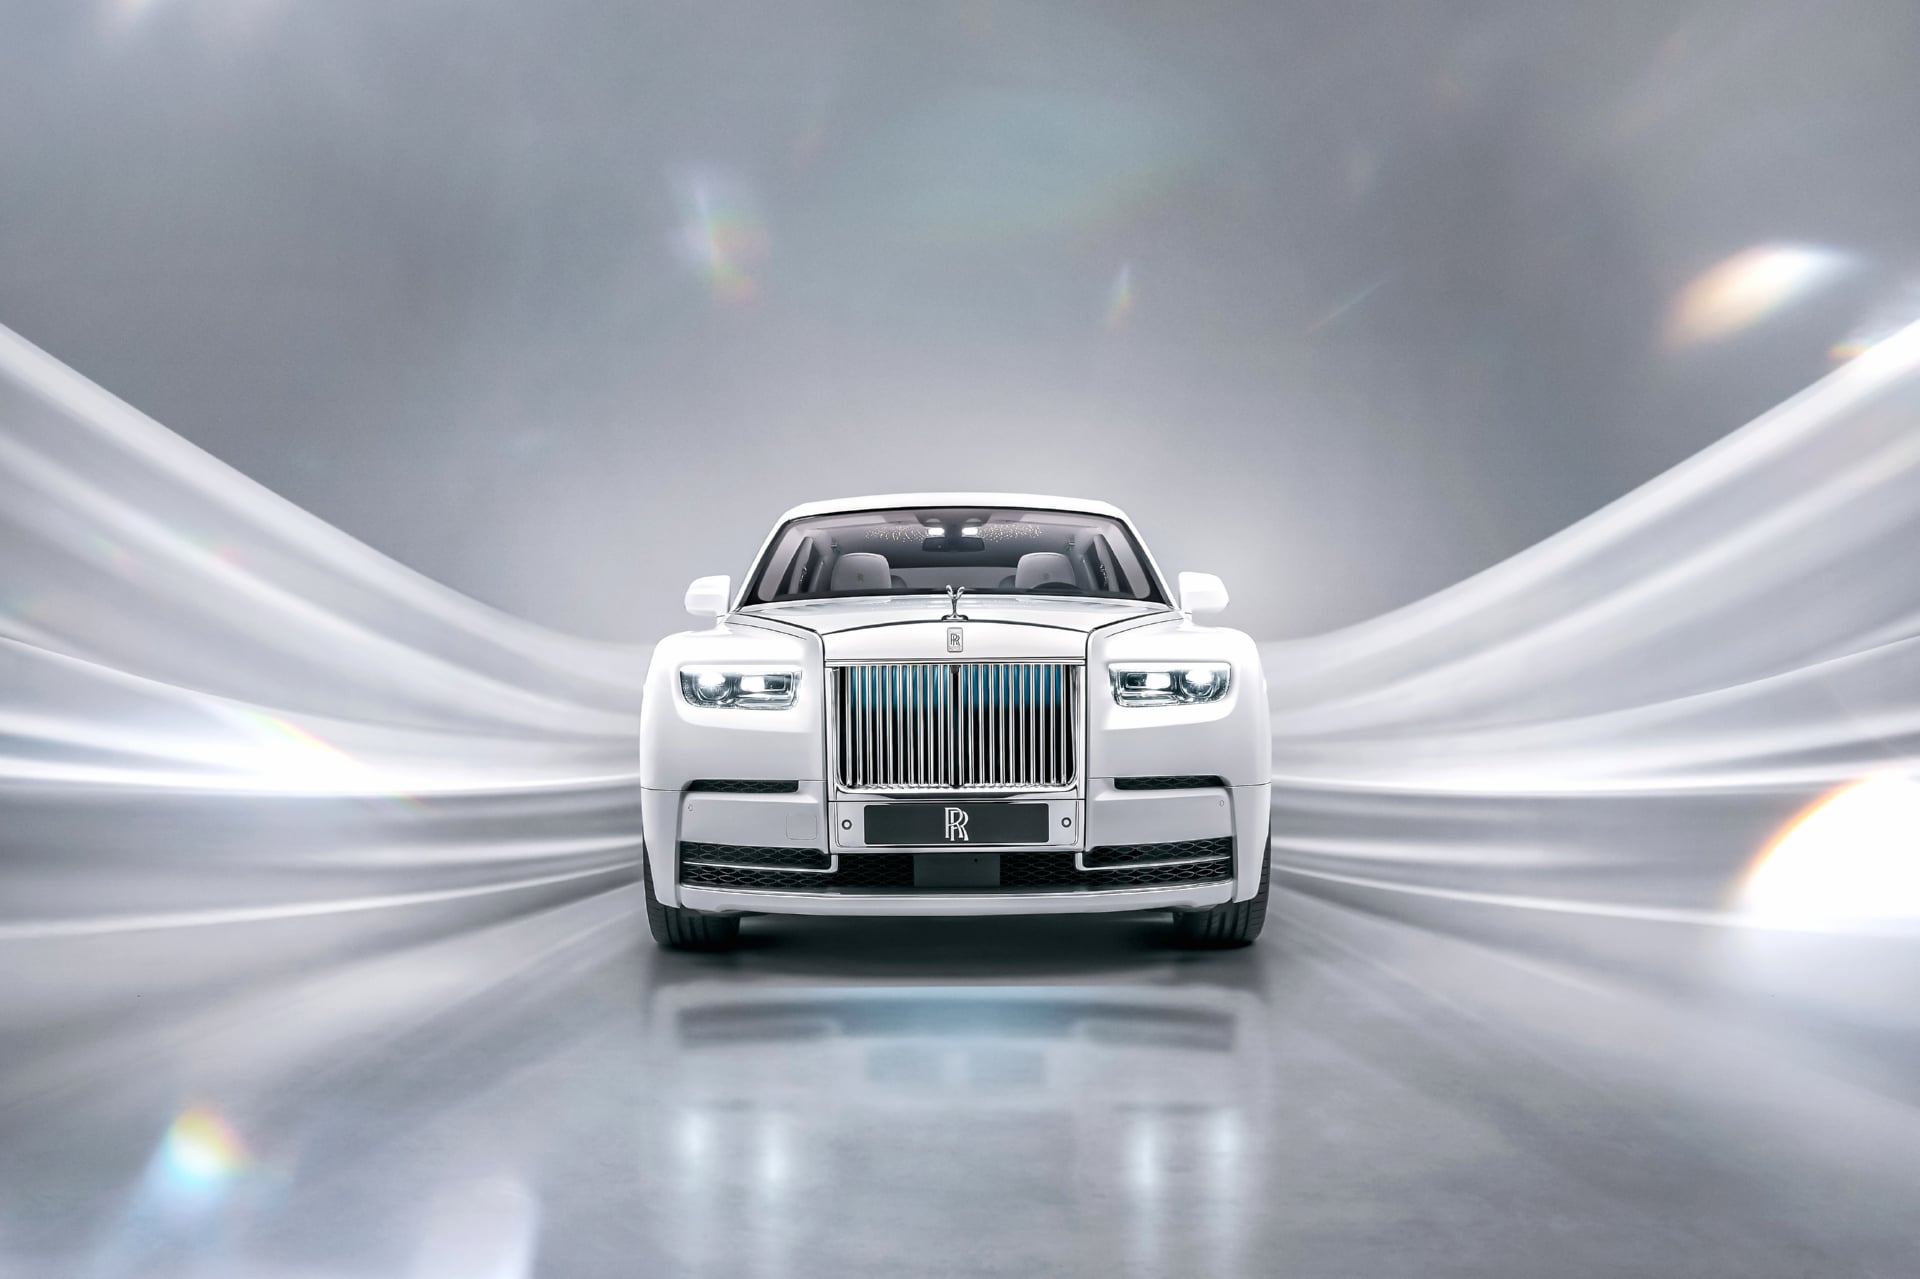 Rolls-Royce Phantom EWB Platino at 1600 x 1200 size wallpapers HD quality